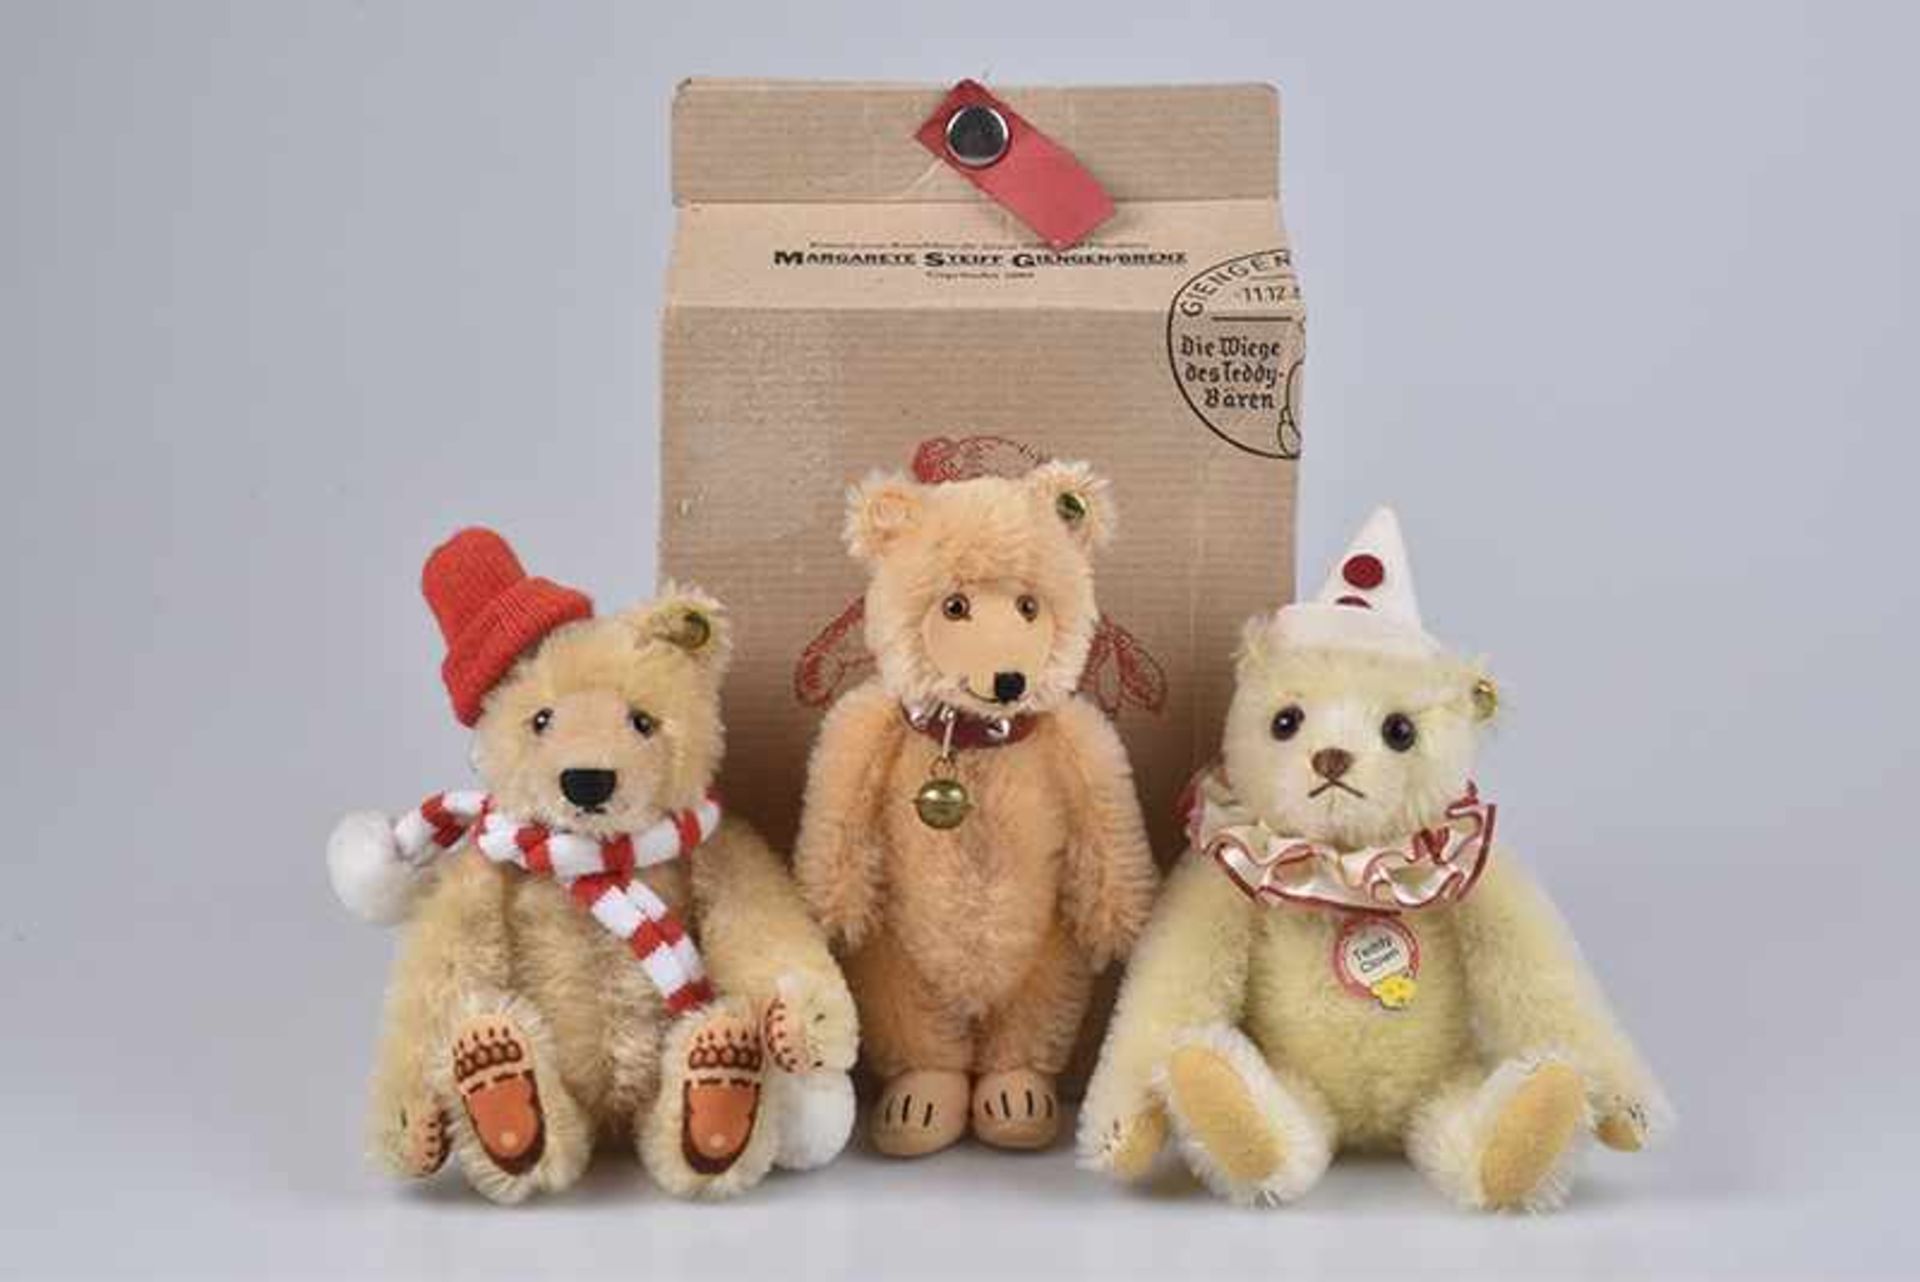 STEIFF 3 kleine Teddybären, alle Knopf, Replica, Teddy Baby 1931, limitierte Auflage, USA, Nr.